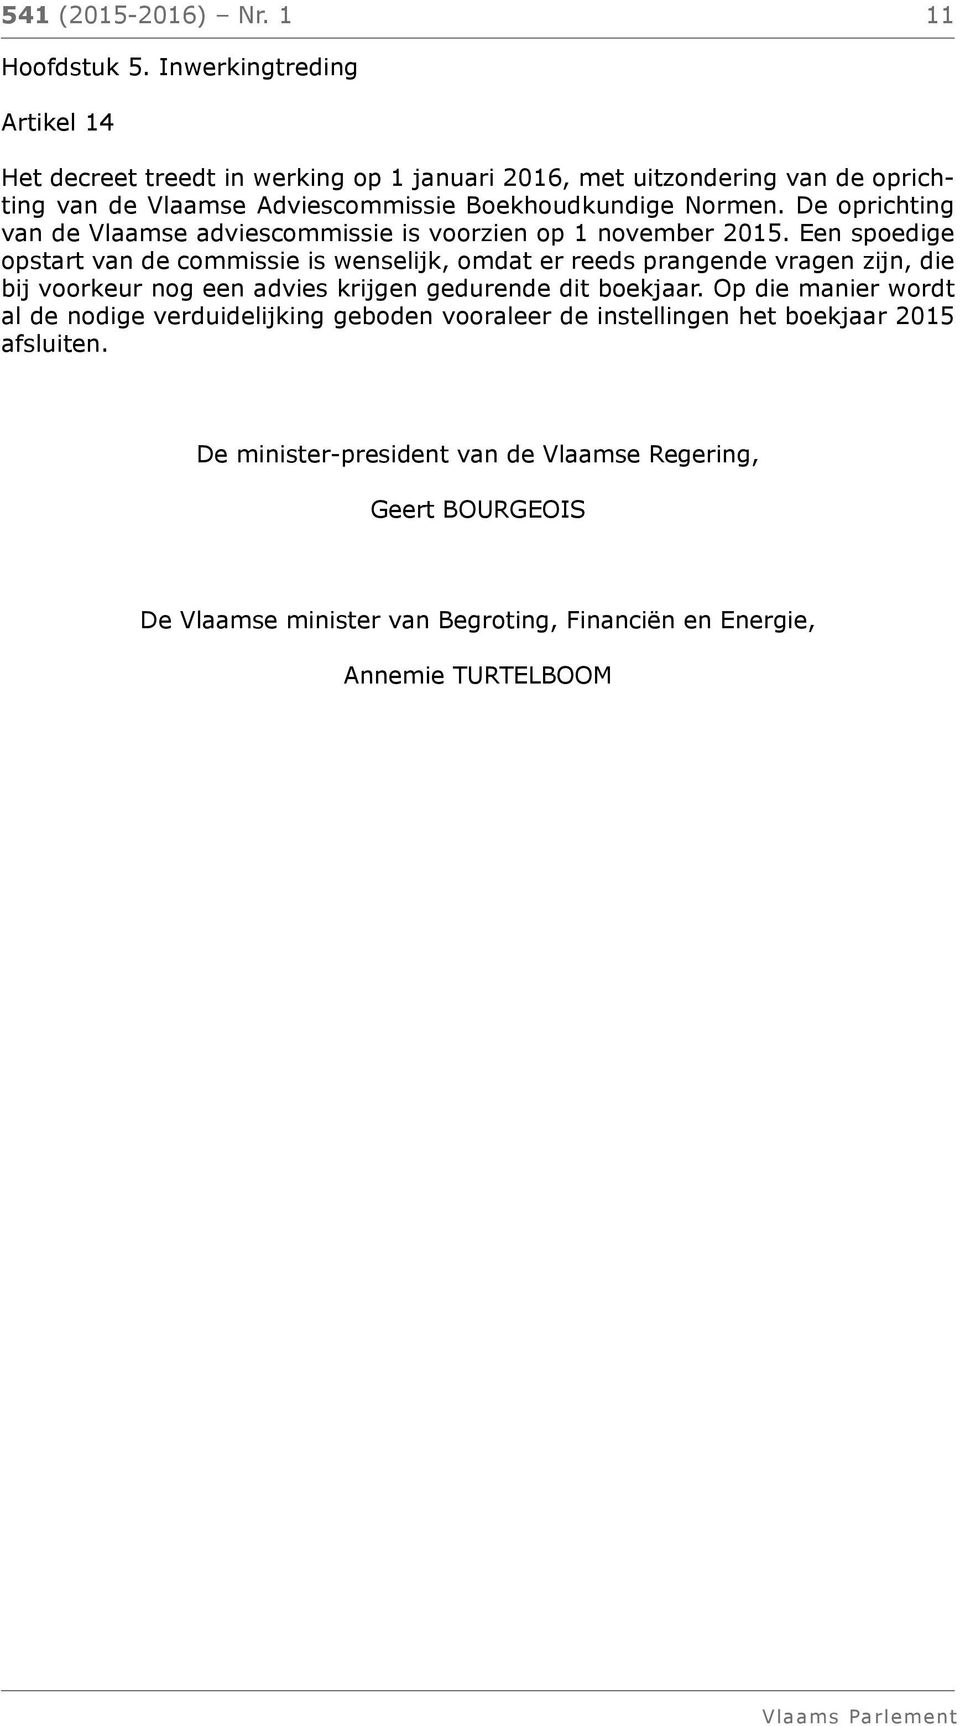 De oprichting van de Vlaamse adviescommissie is voorzien op 1 november 2015.